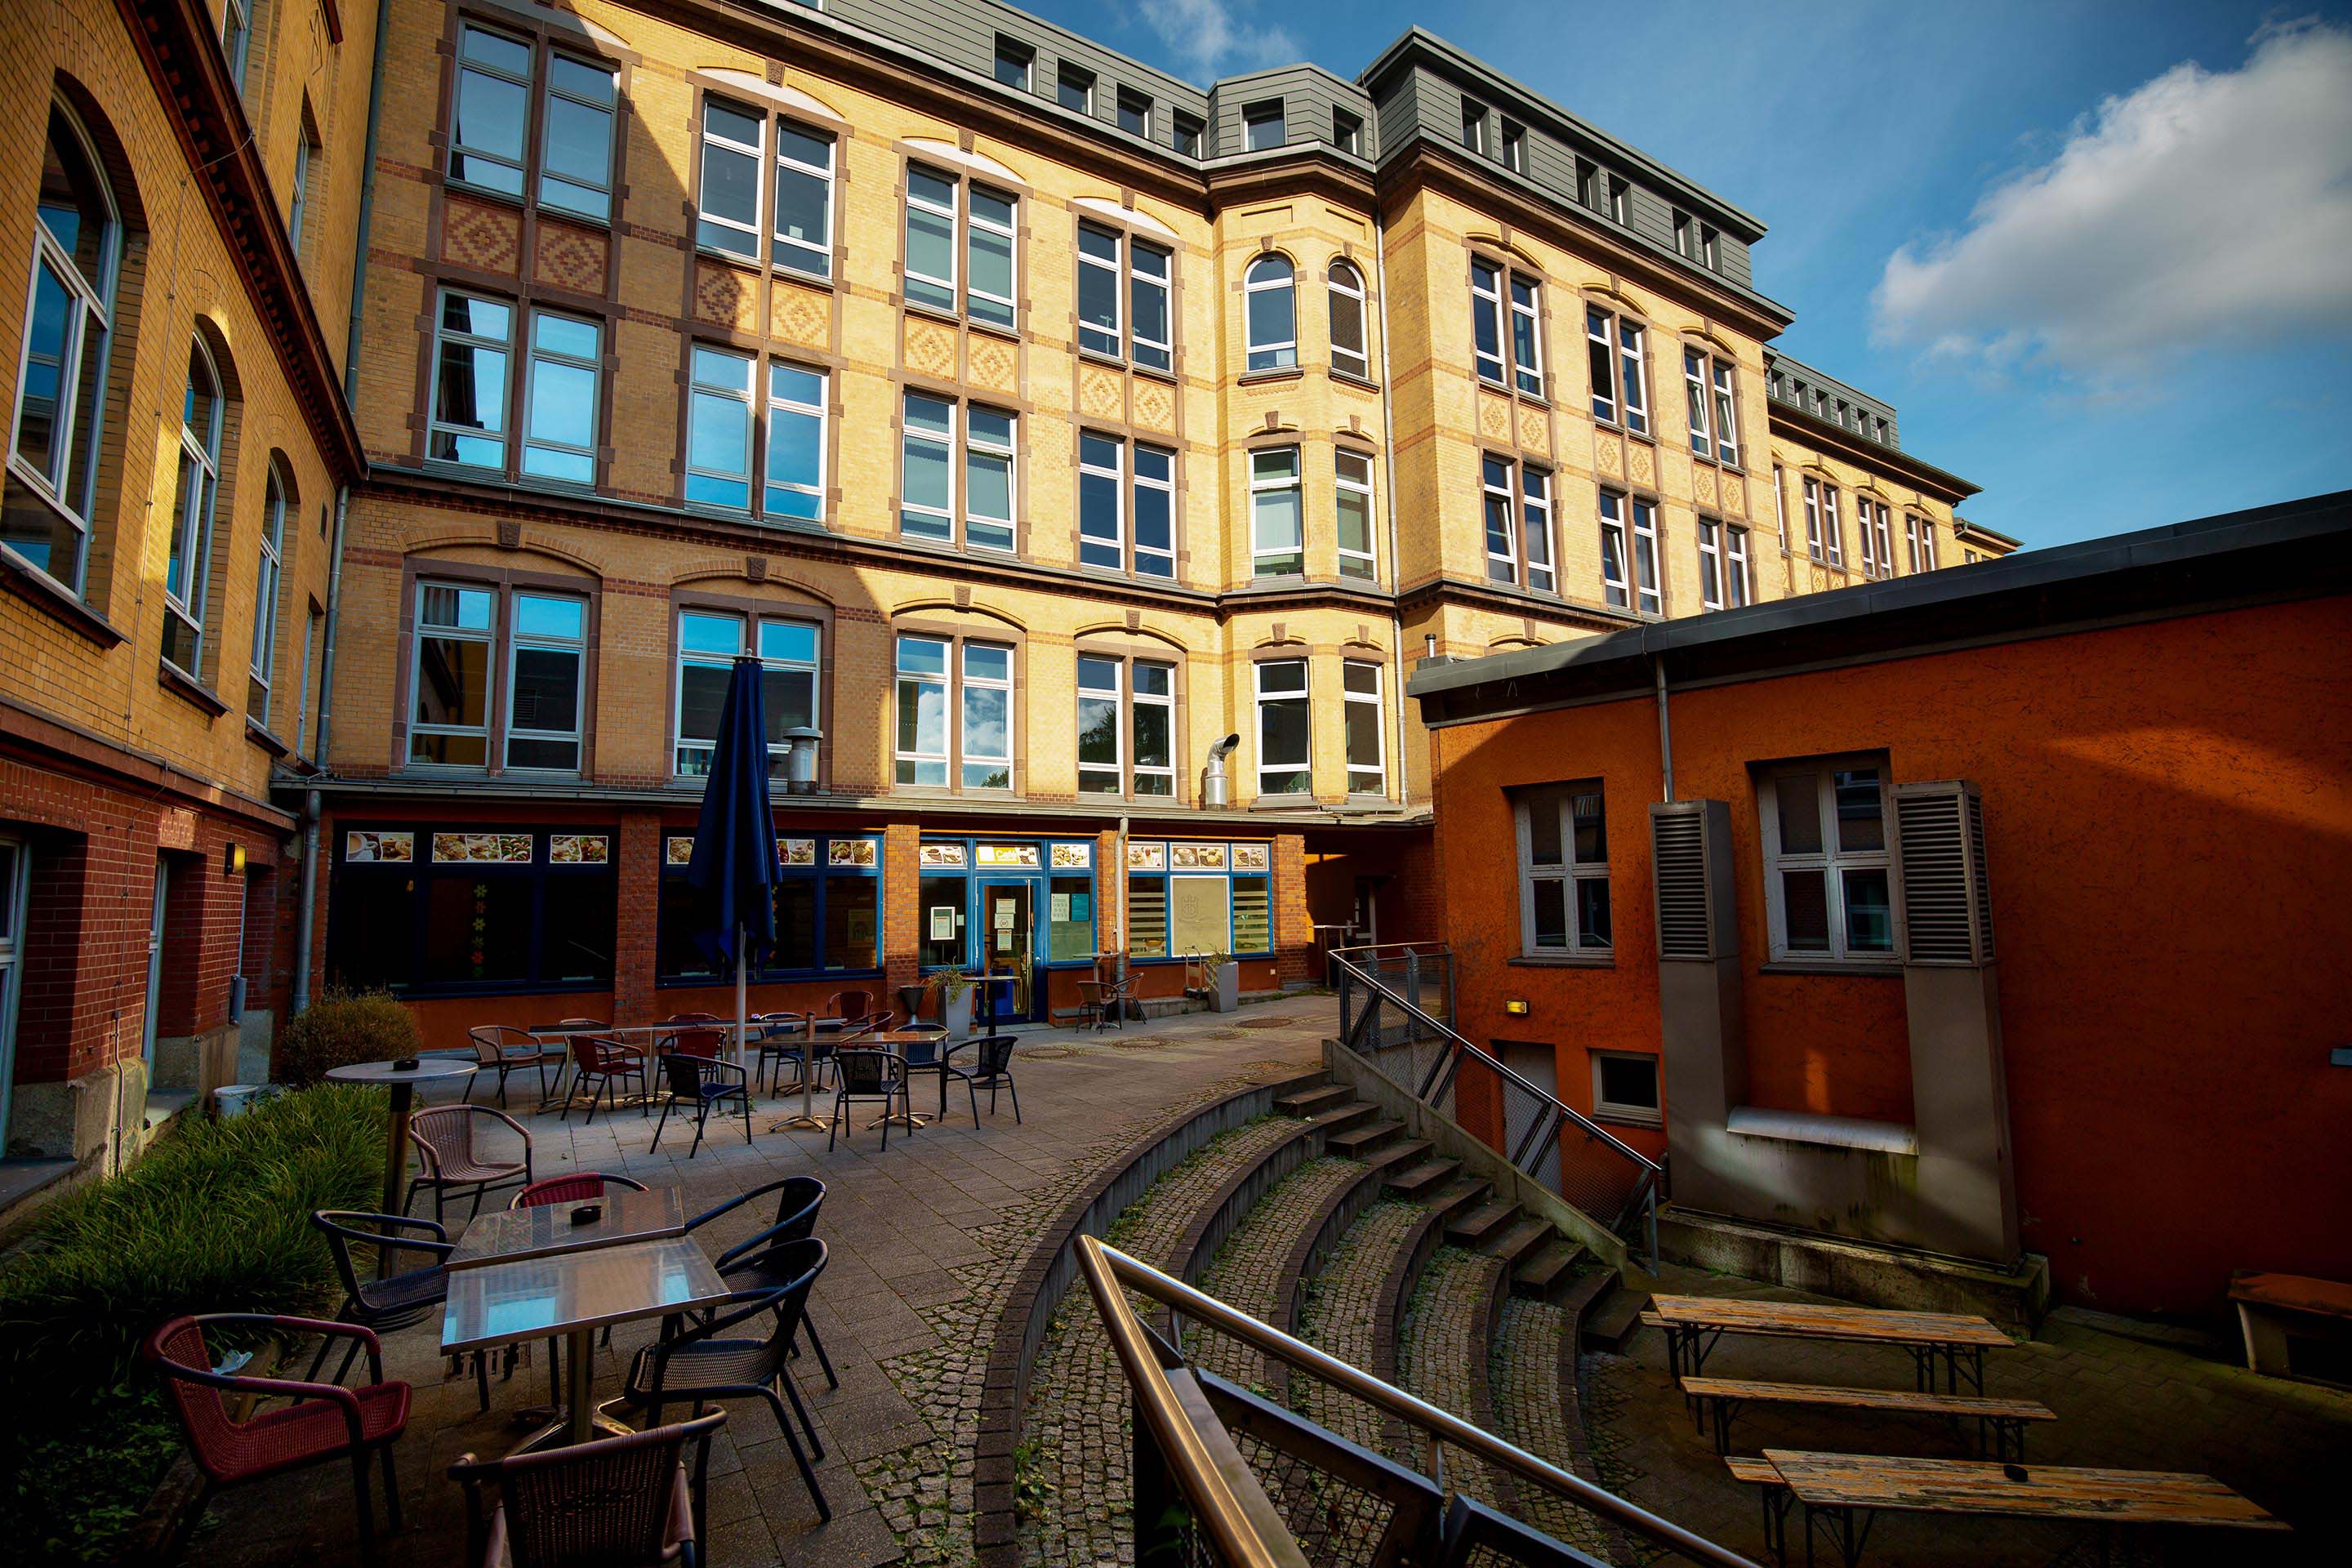 Synchrone Termine zum Masterstudiengang Higher Education finden auf dem Campus der Universität Hamburg statt. Gebäudeansicht.